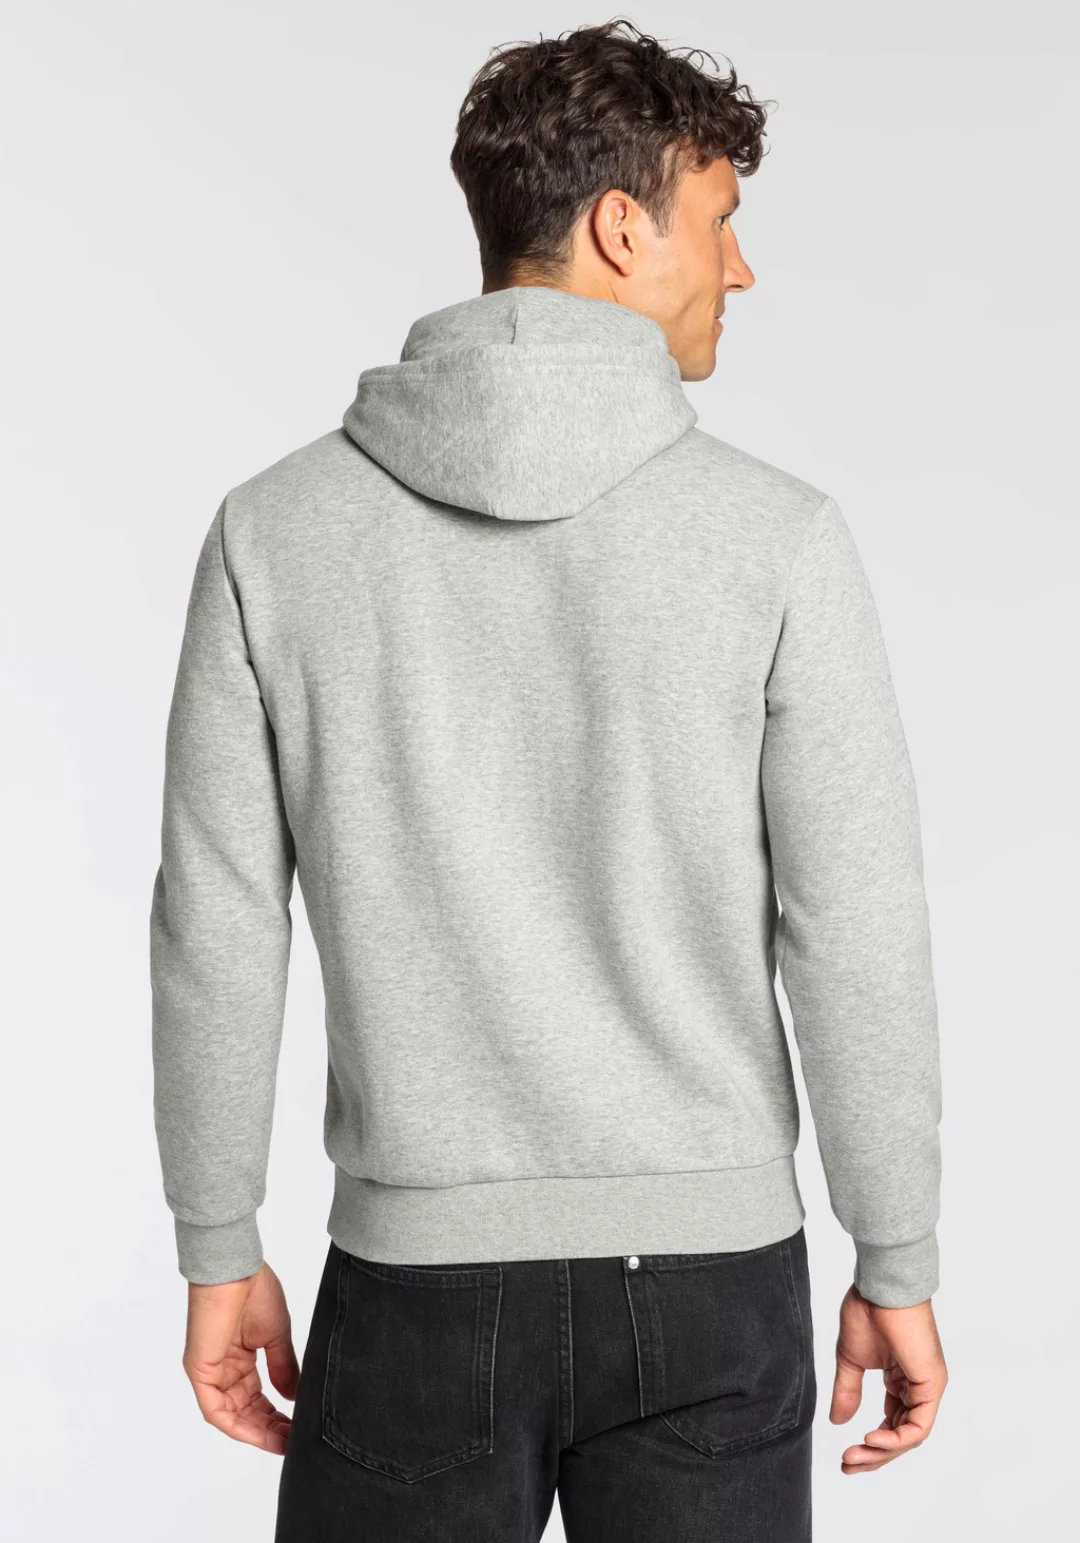 Champion Sweatshirt "Graphic Shop Hooded Sweatshirt" günstig online kaufen